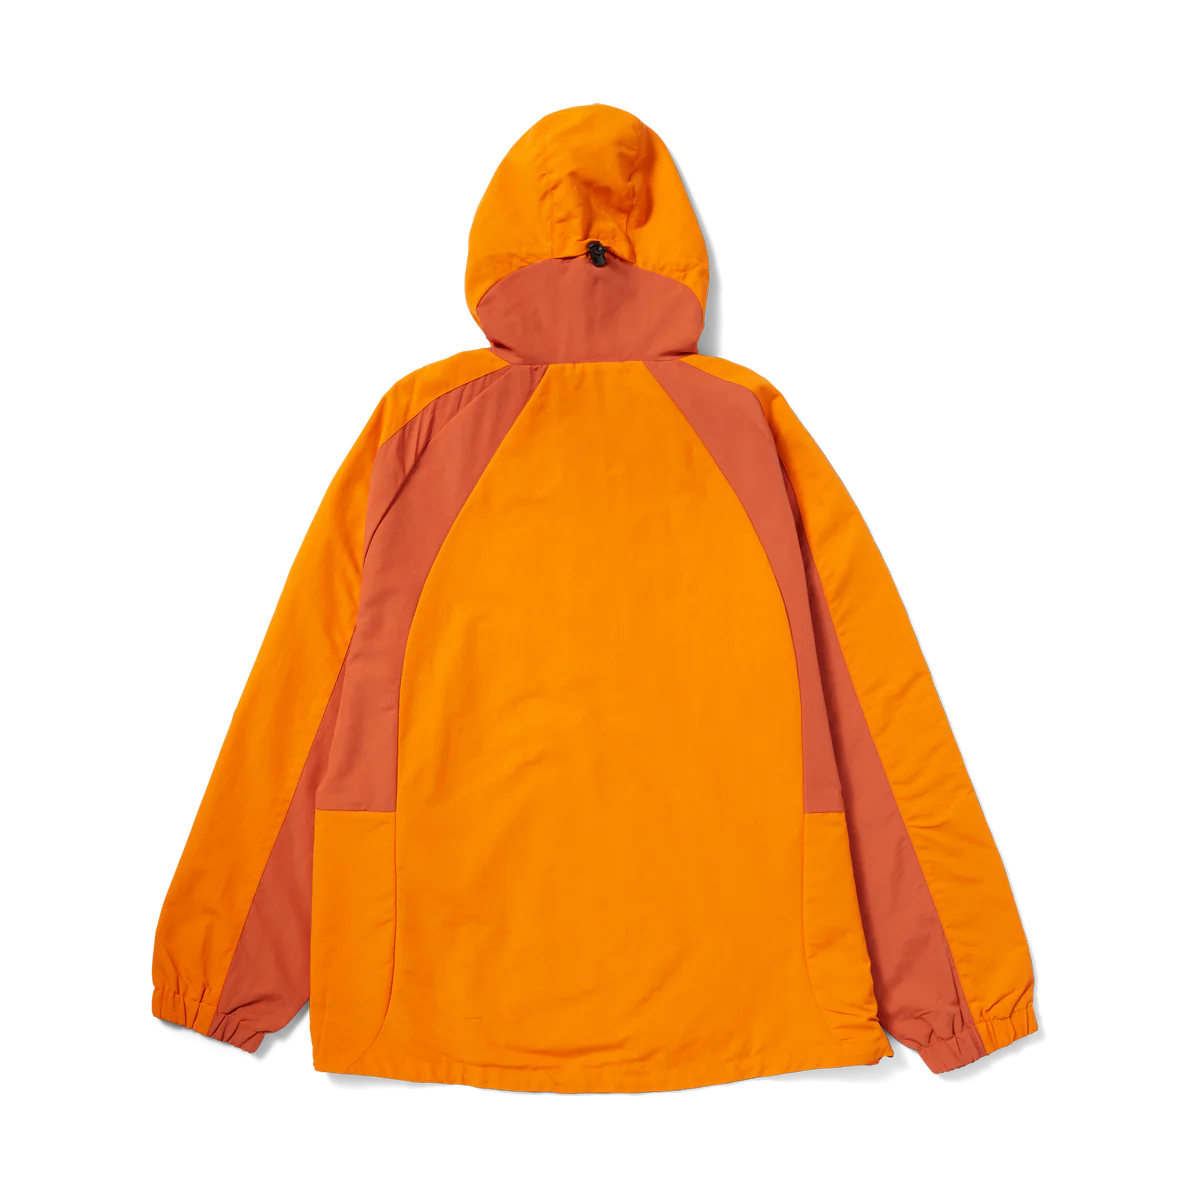 HUF Set Shell Jacket Orange